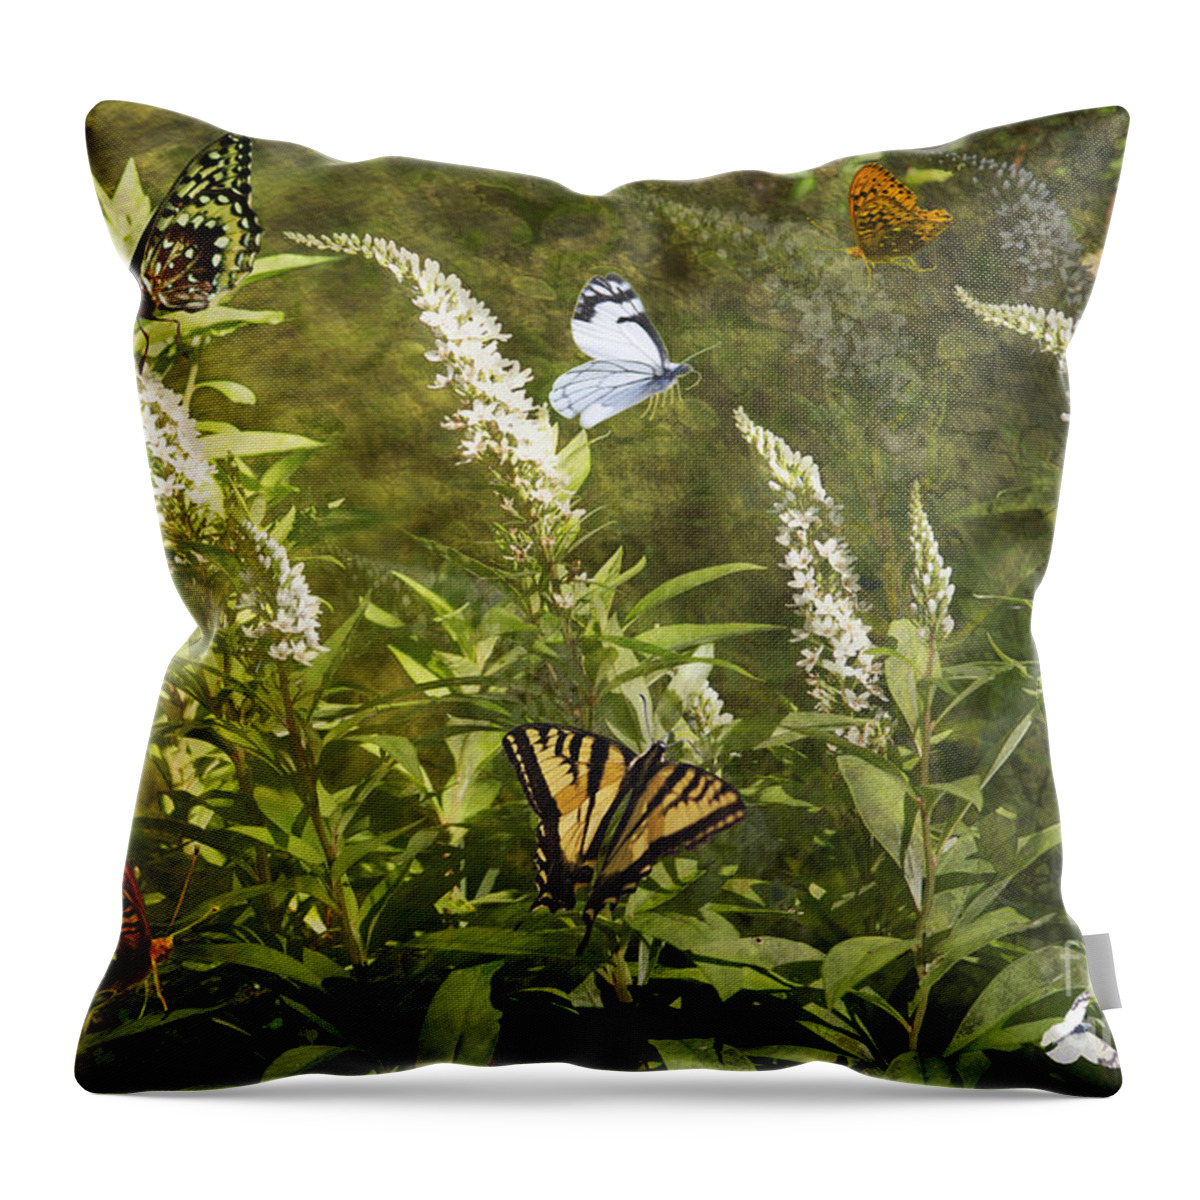 Butterflies Throw Pillow featuring the photograph Butterflies in Golden Garden by Belinda Greb